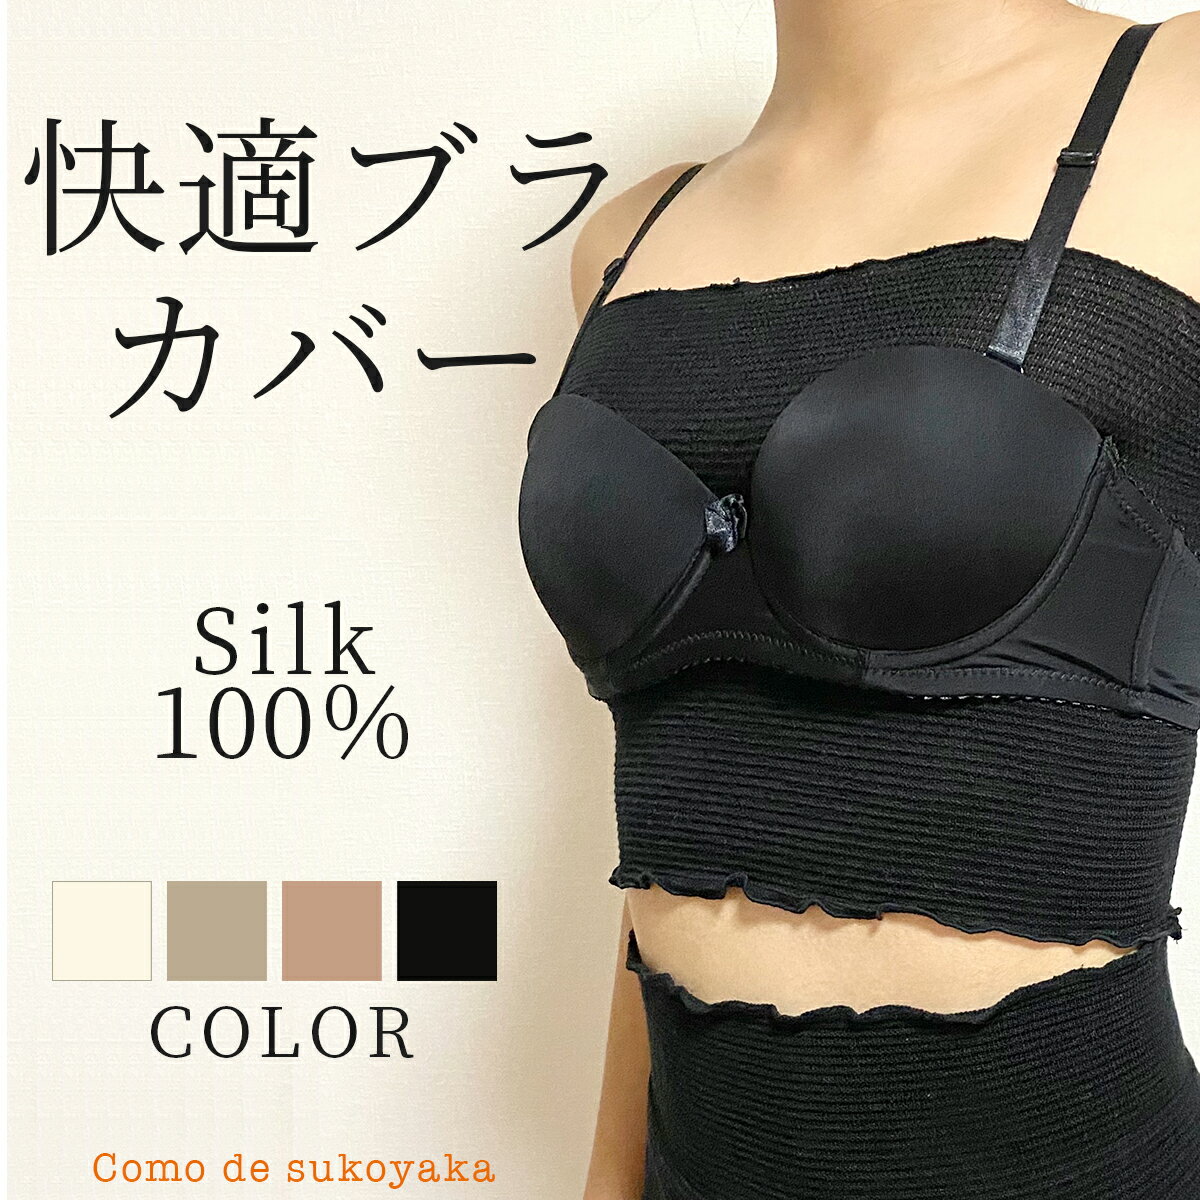 日本製 シルク 絹 100% ブラカバー ブラインナー ブラトップ ベアトップ チューブトップ 汗取り 汗取りインナー 胸 胸周り 背中 レディース 女性 下着 インナー 冷え取り 温活 吸水性 速乾 春用 夏用 秋用 ブラジャー ショート丈 カップなし